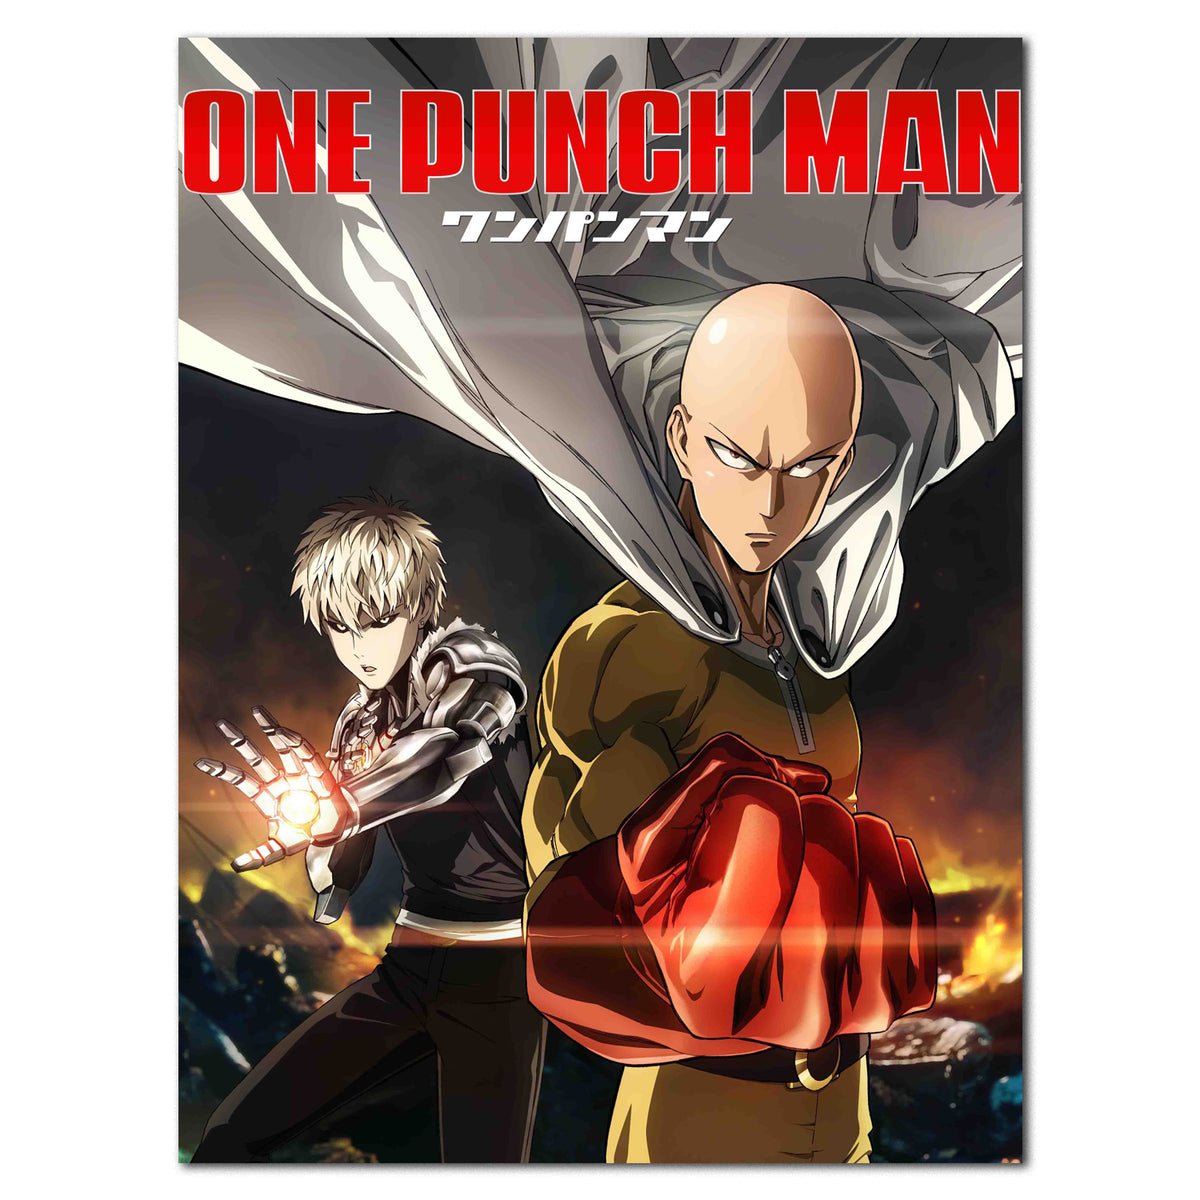 One Punch Man  Segunda temporada será produzida por novo estúdio